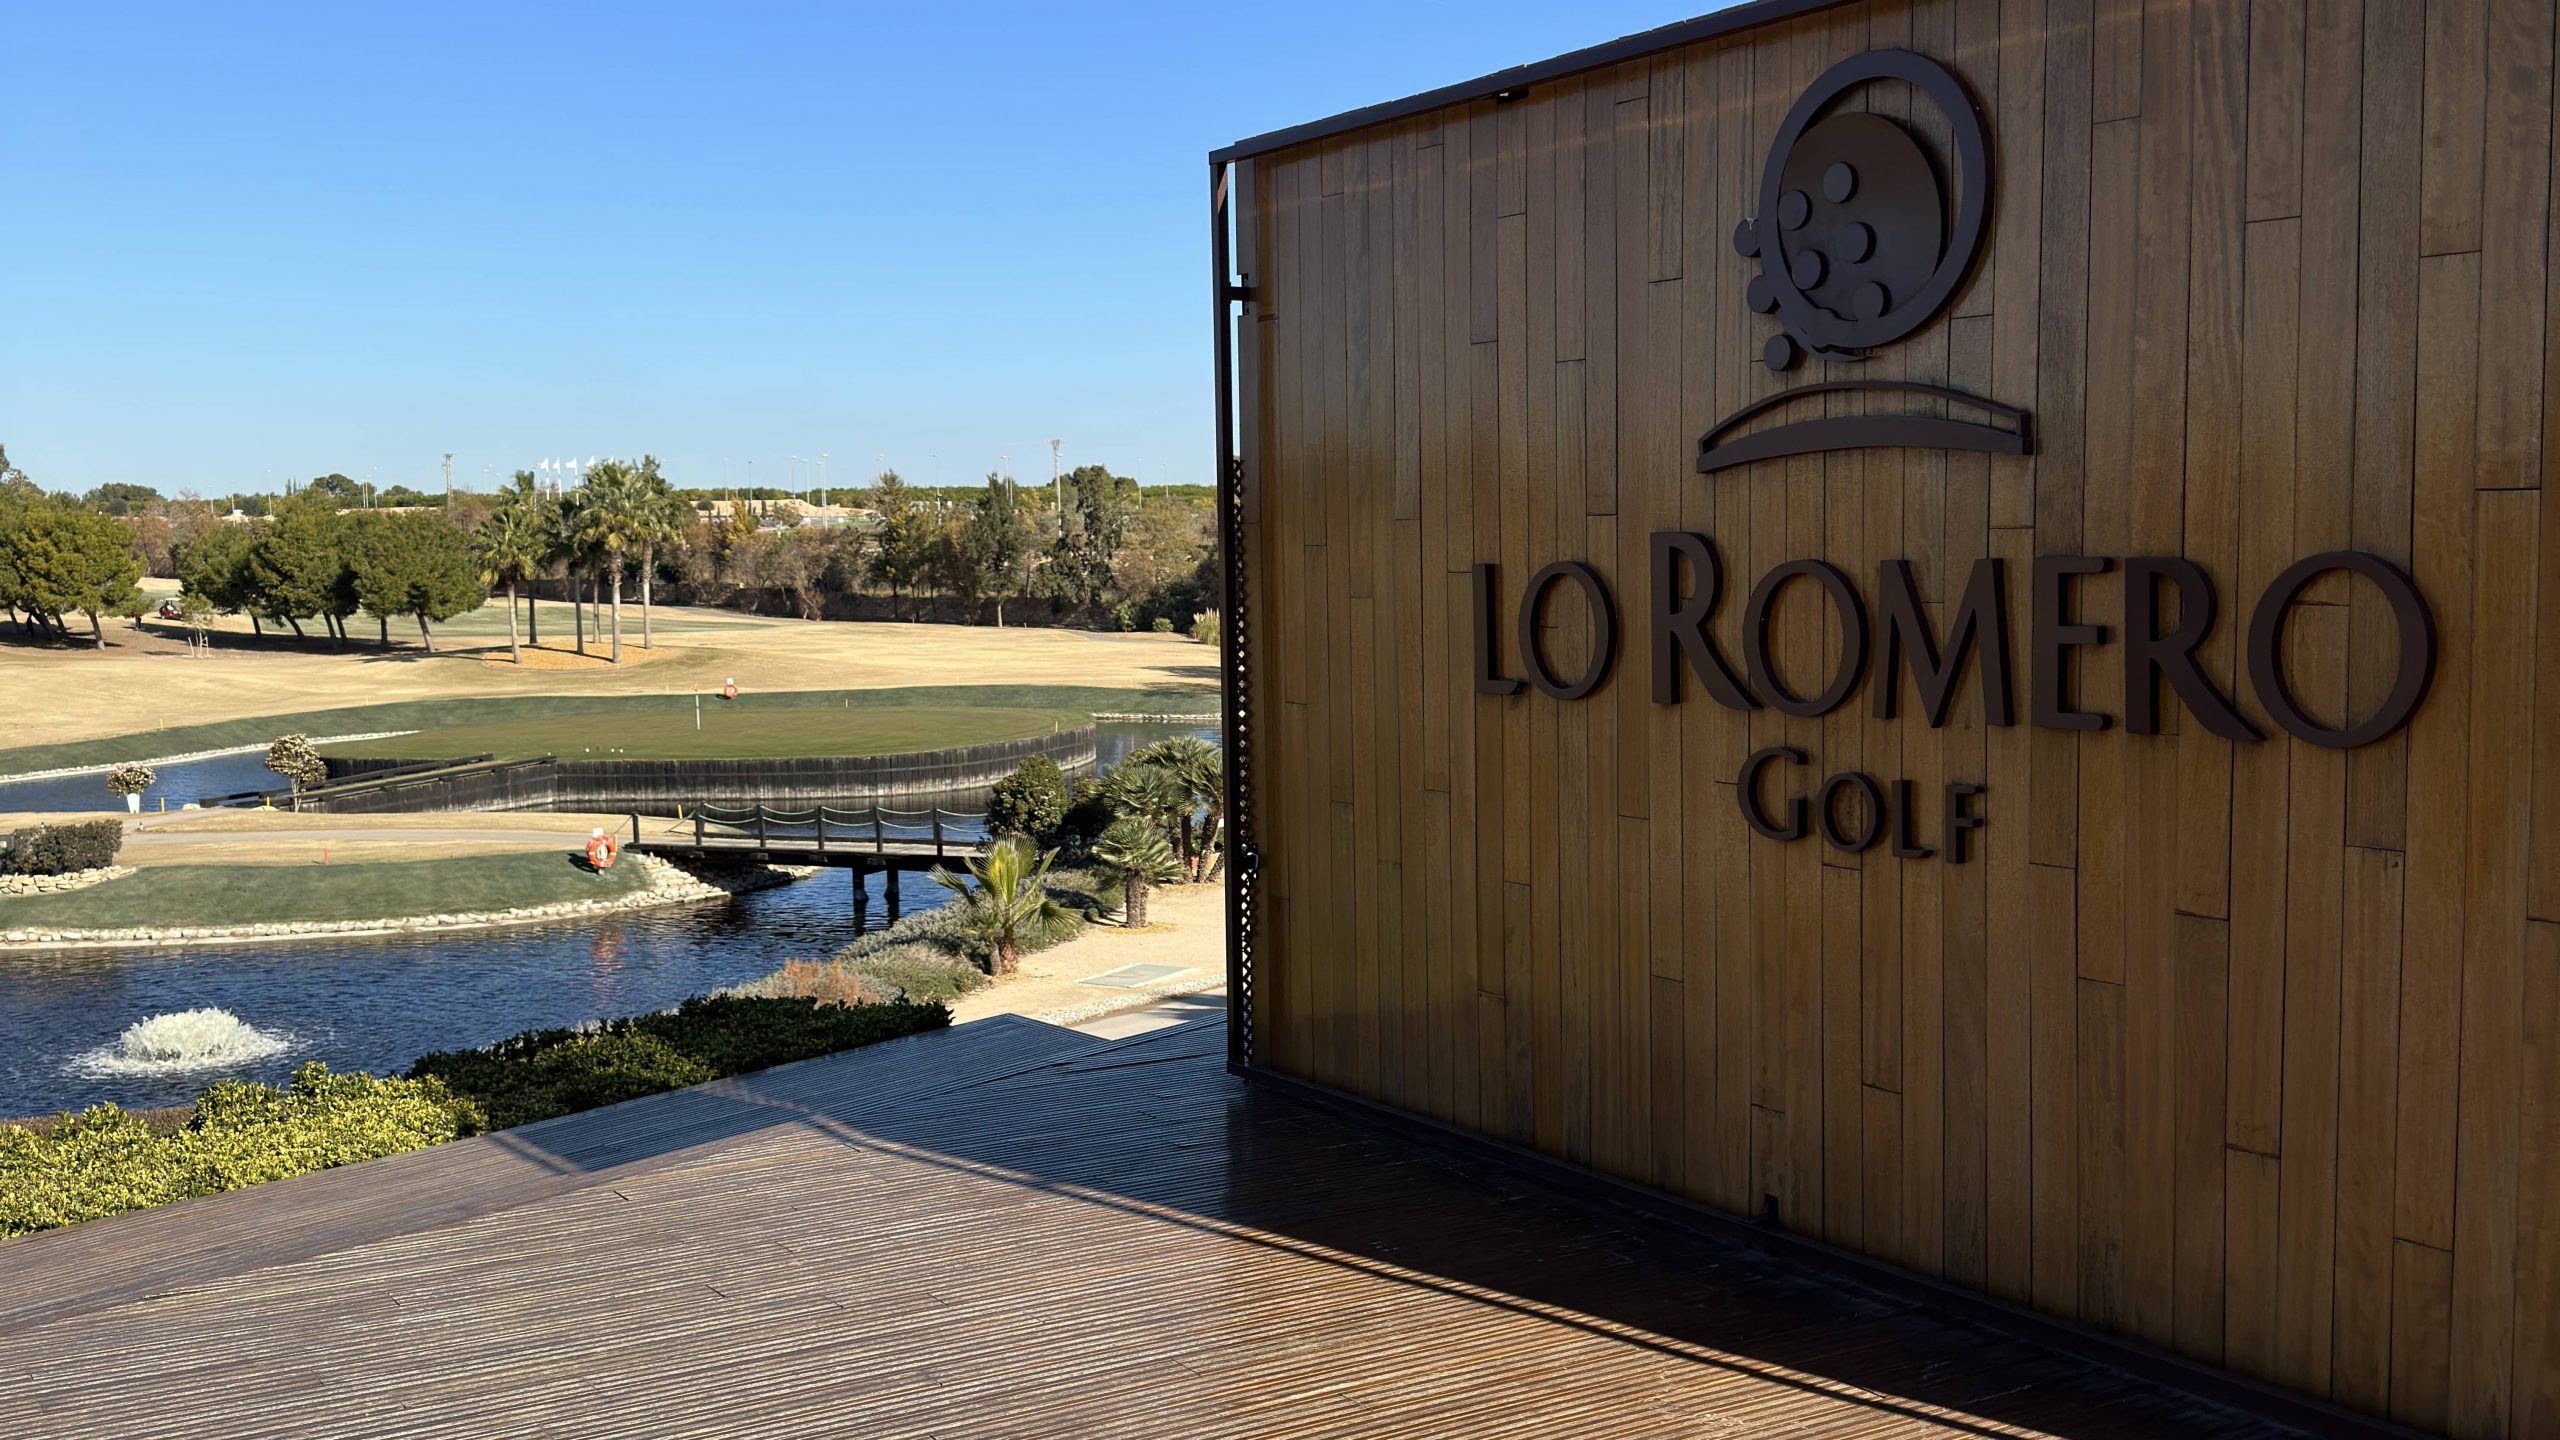 Lo Romero Golf Club (Alicante) – Course Review